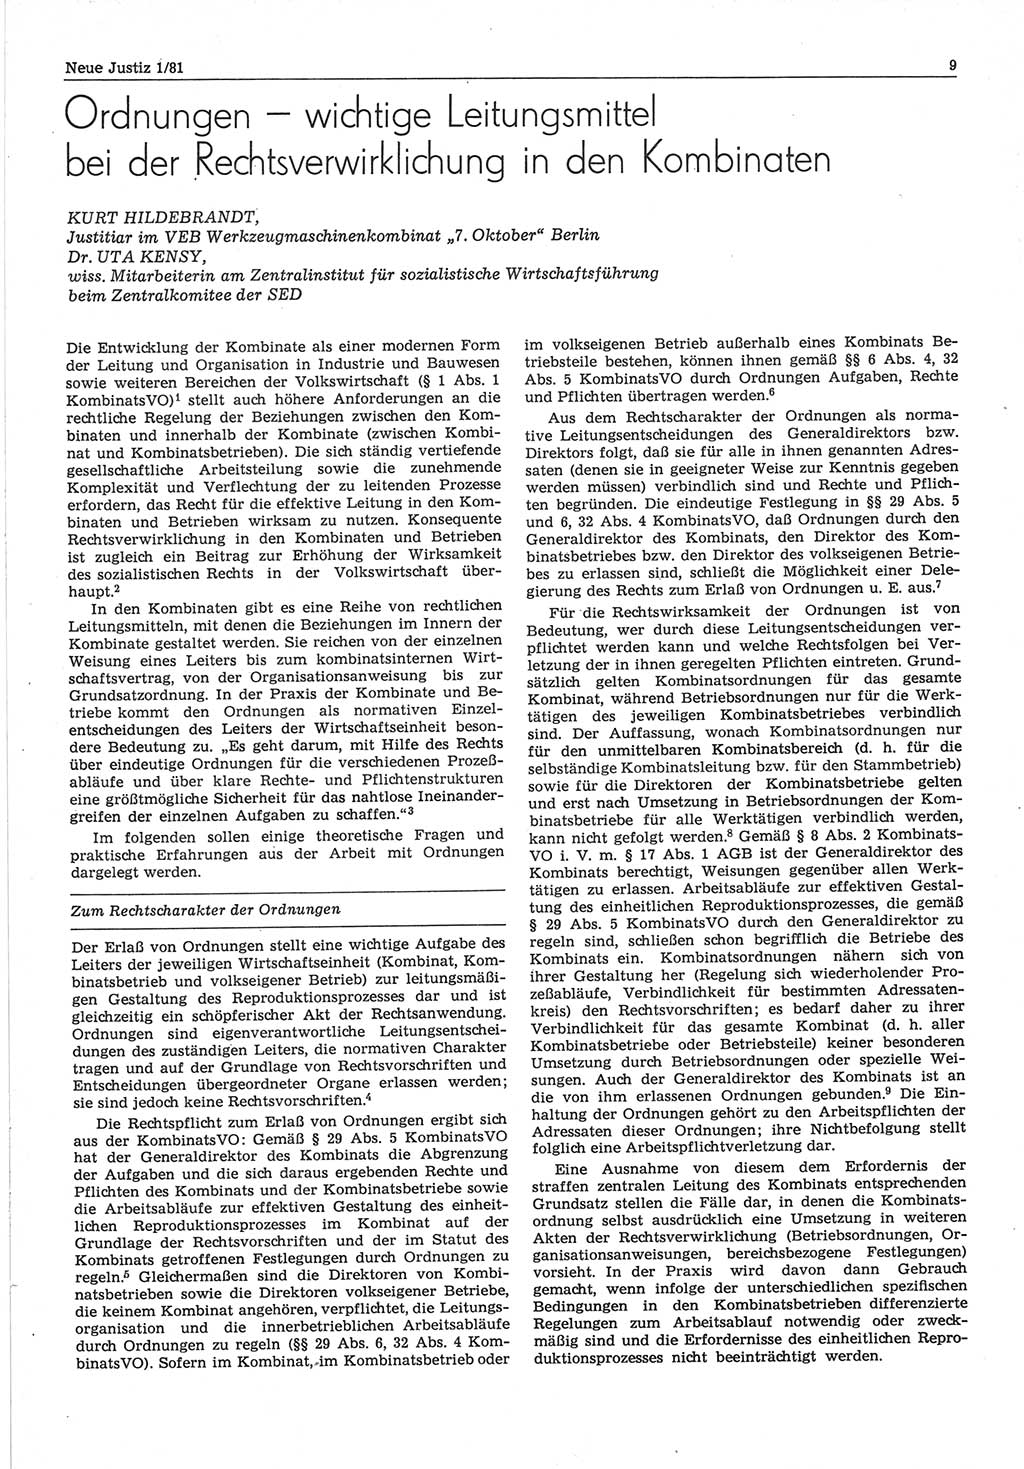 Neue Justiz (NJ), Zeitschrift für sozialistisches Recht und Gesetzlichkeit [Deutsche Demokratische Republik (DDR)], 35. Jahrgang 1981, Seite 9 (NJ DDR 1981, S. 9)